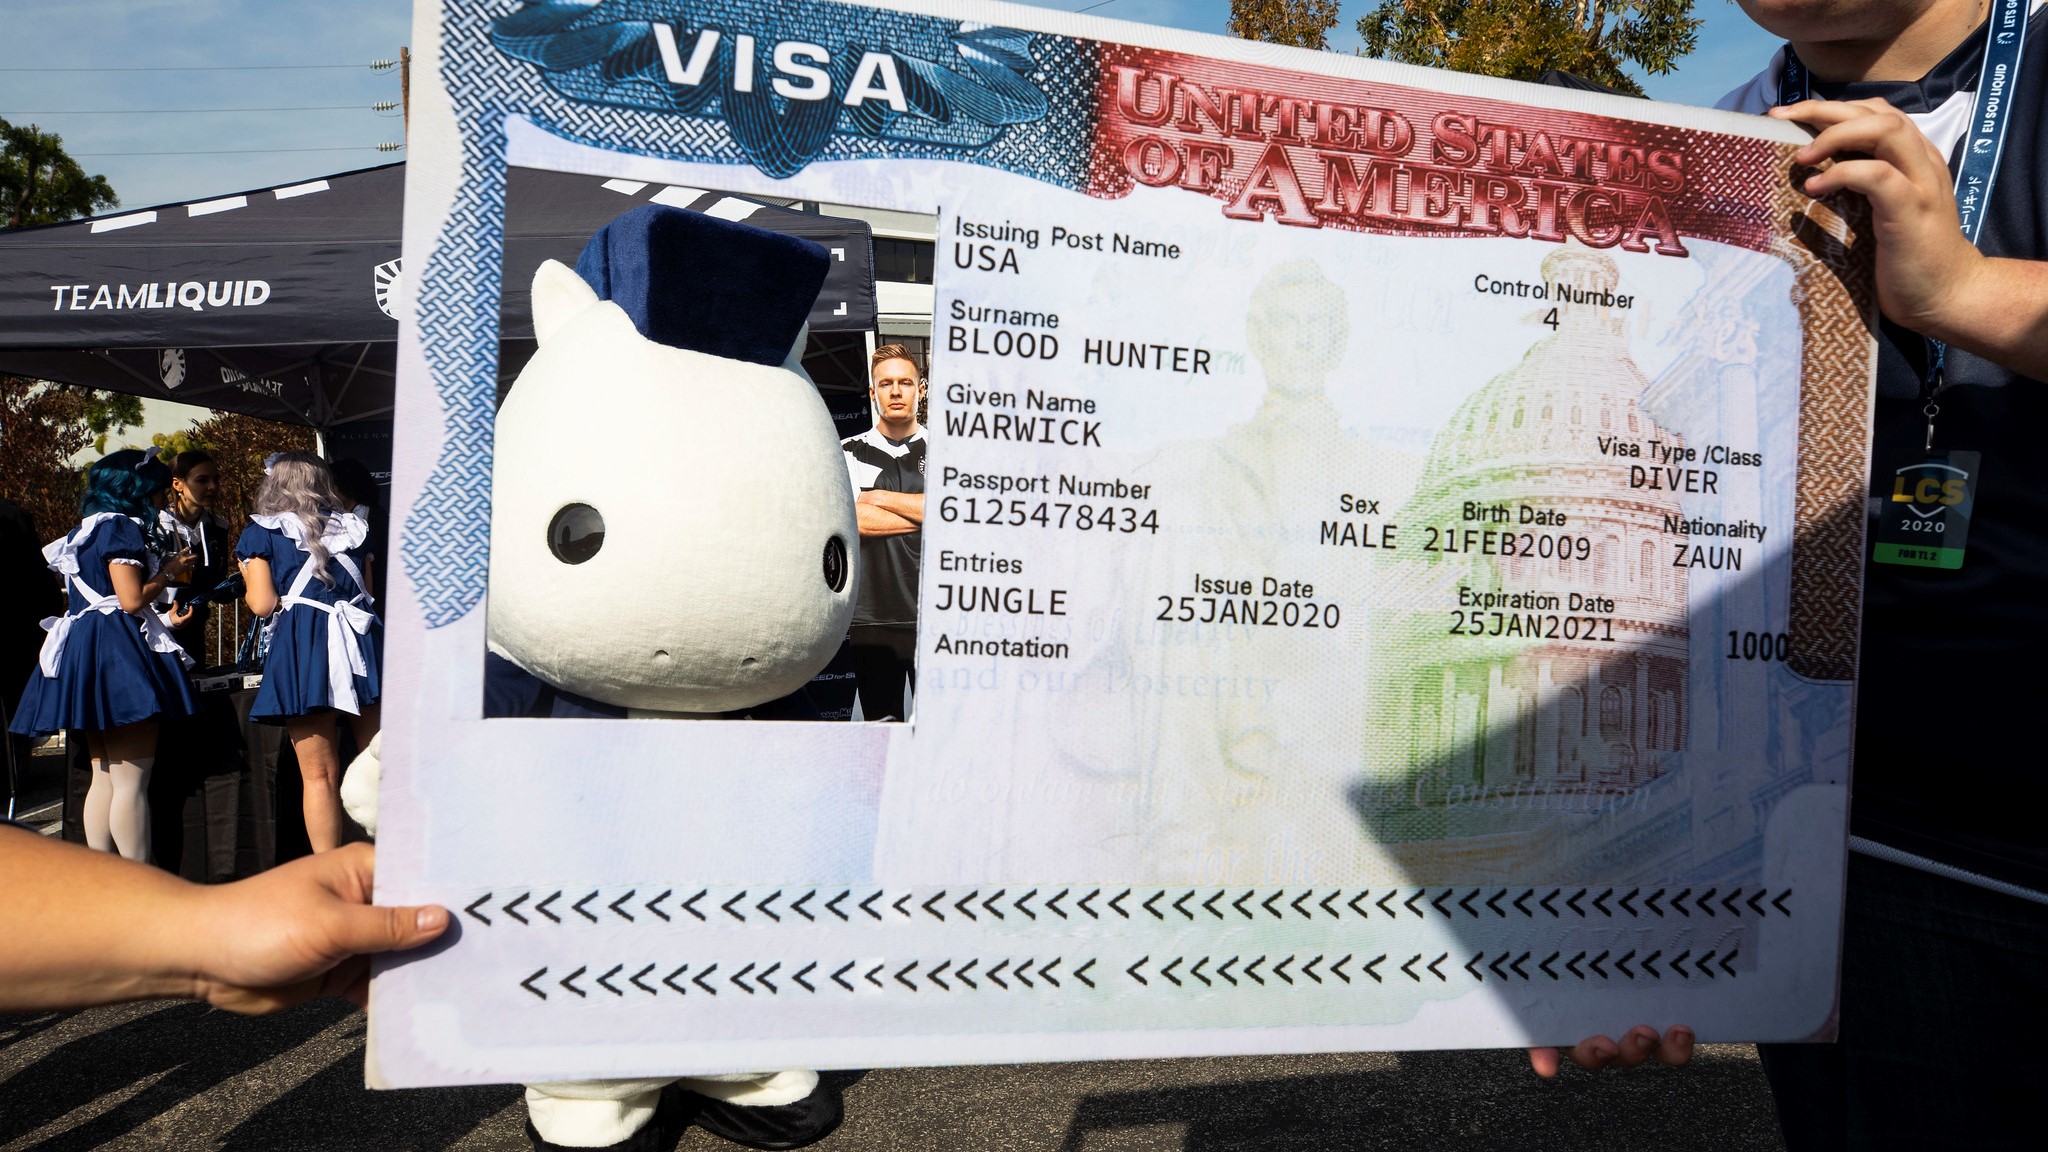 Team Liquid's mascot poses in a Visa Card cut out.